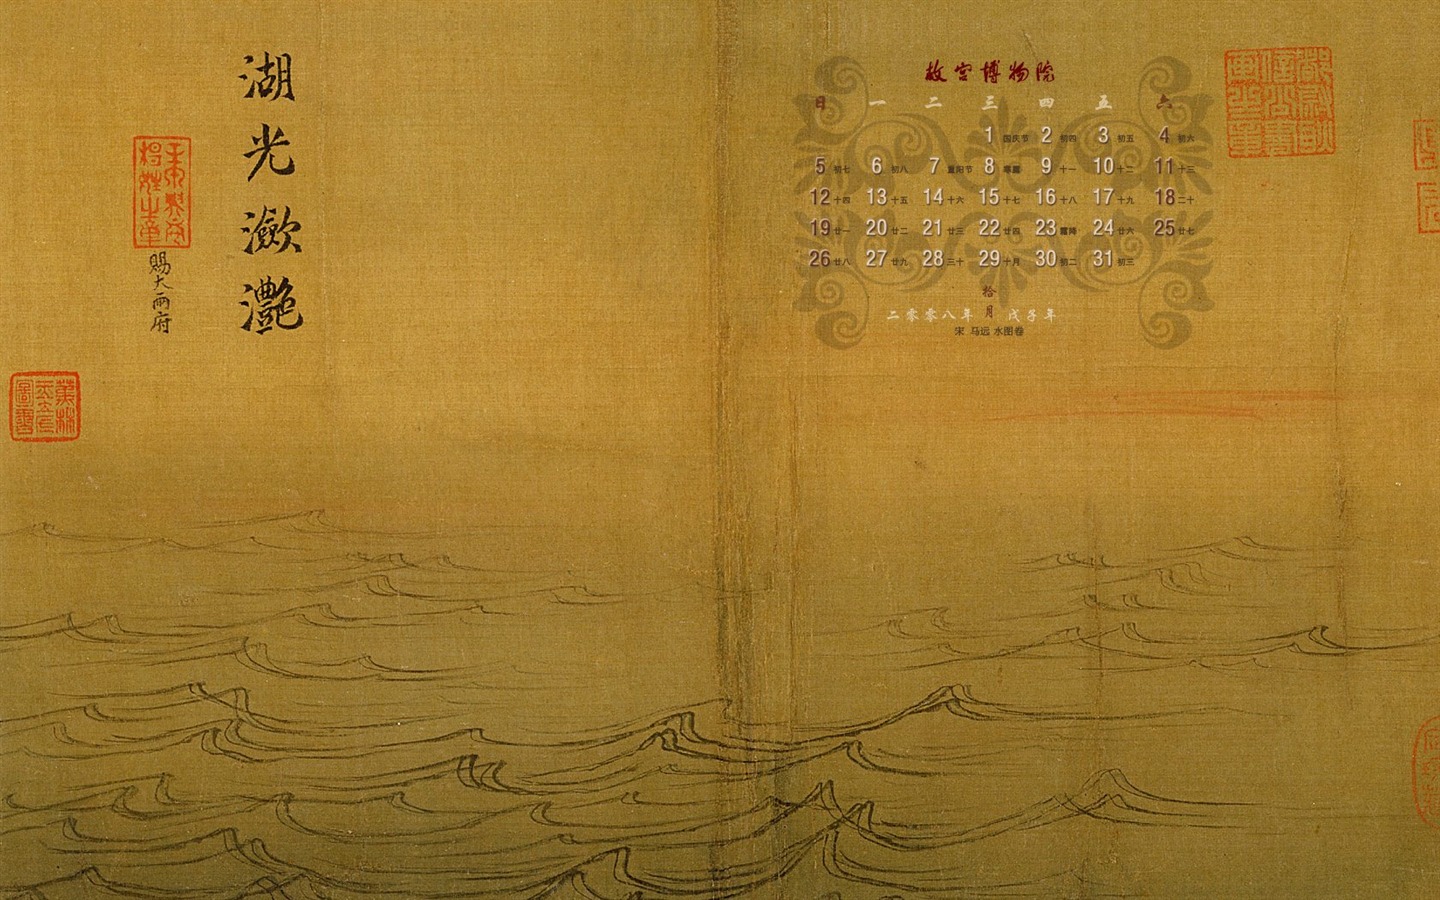 北京故宫博物院 文物展壁纸(二)18 - 1440x900